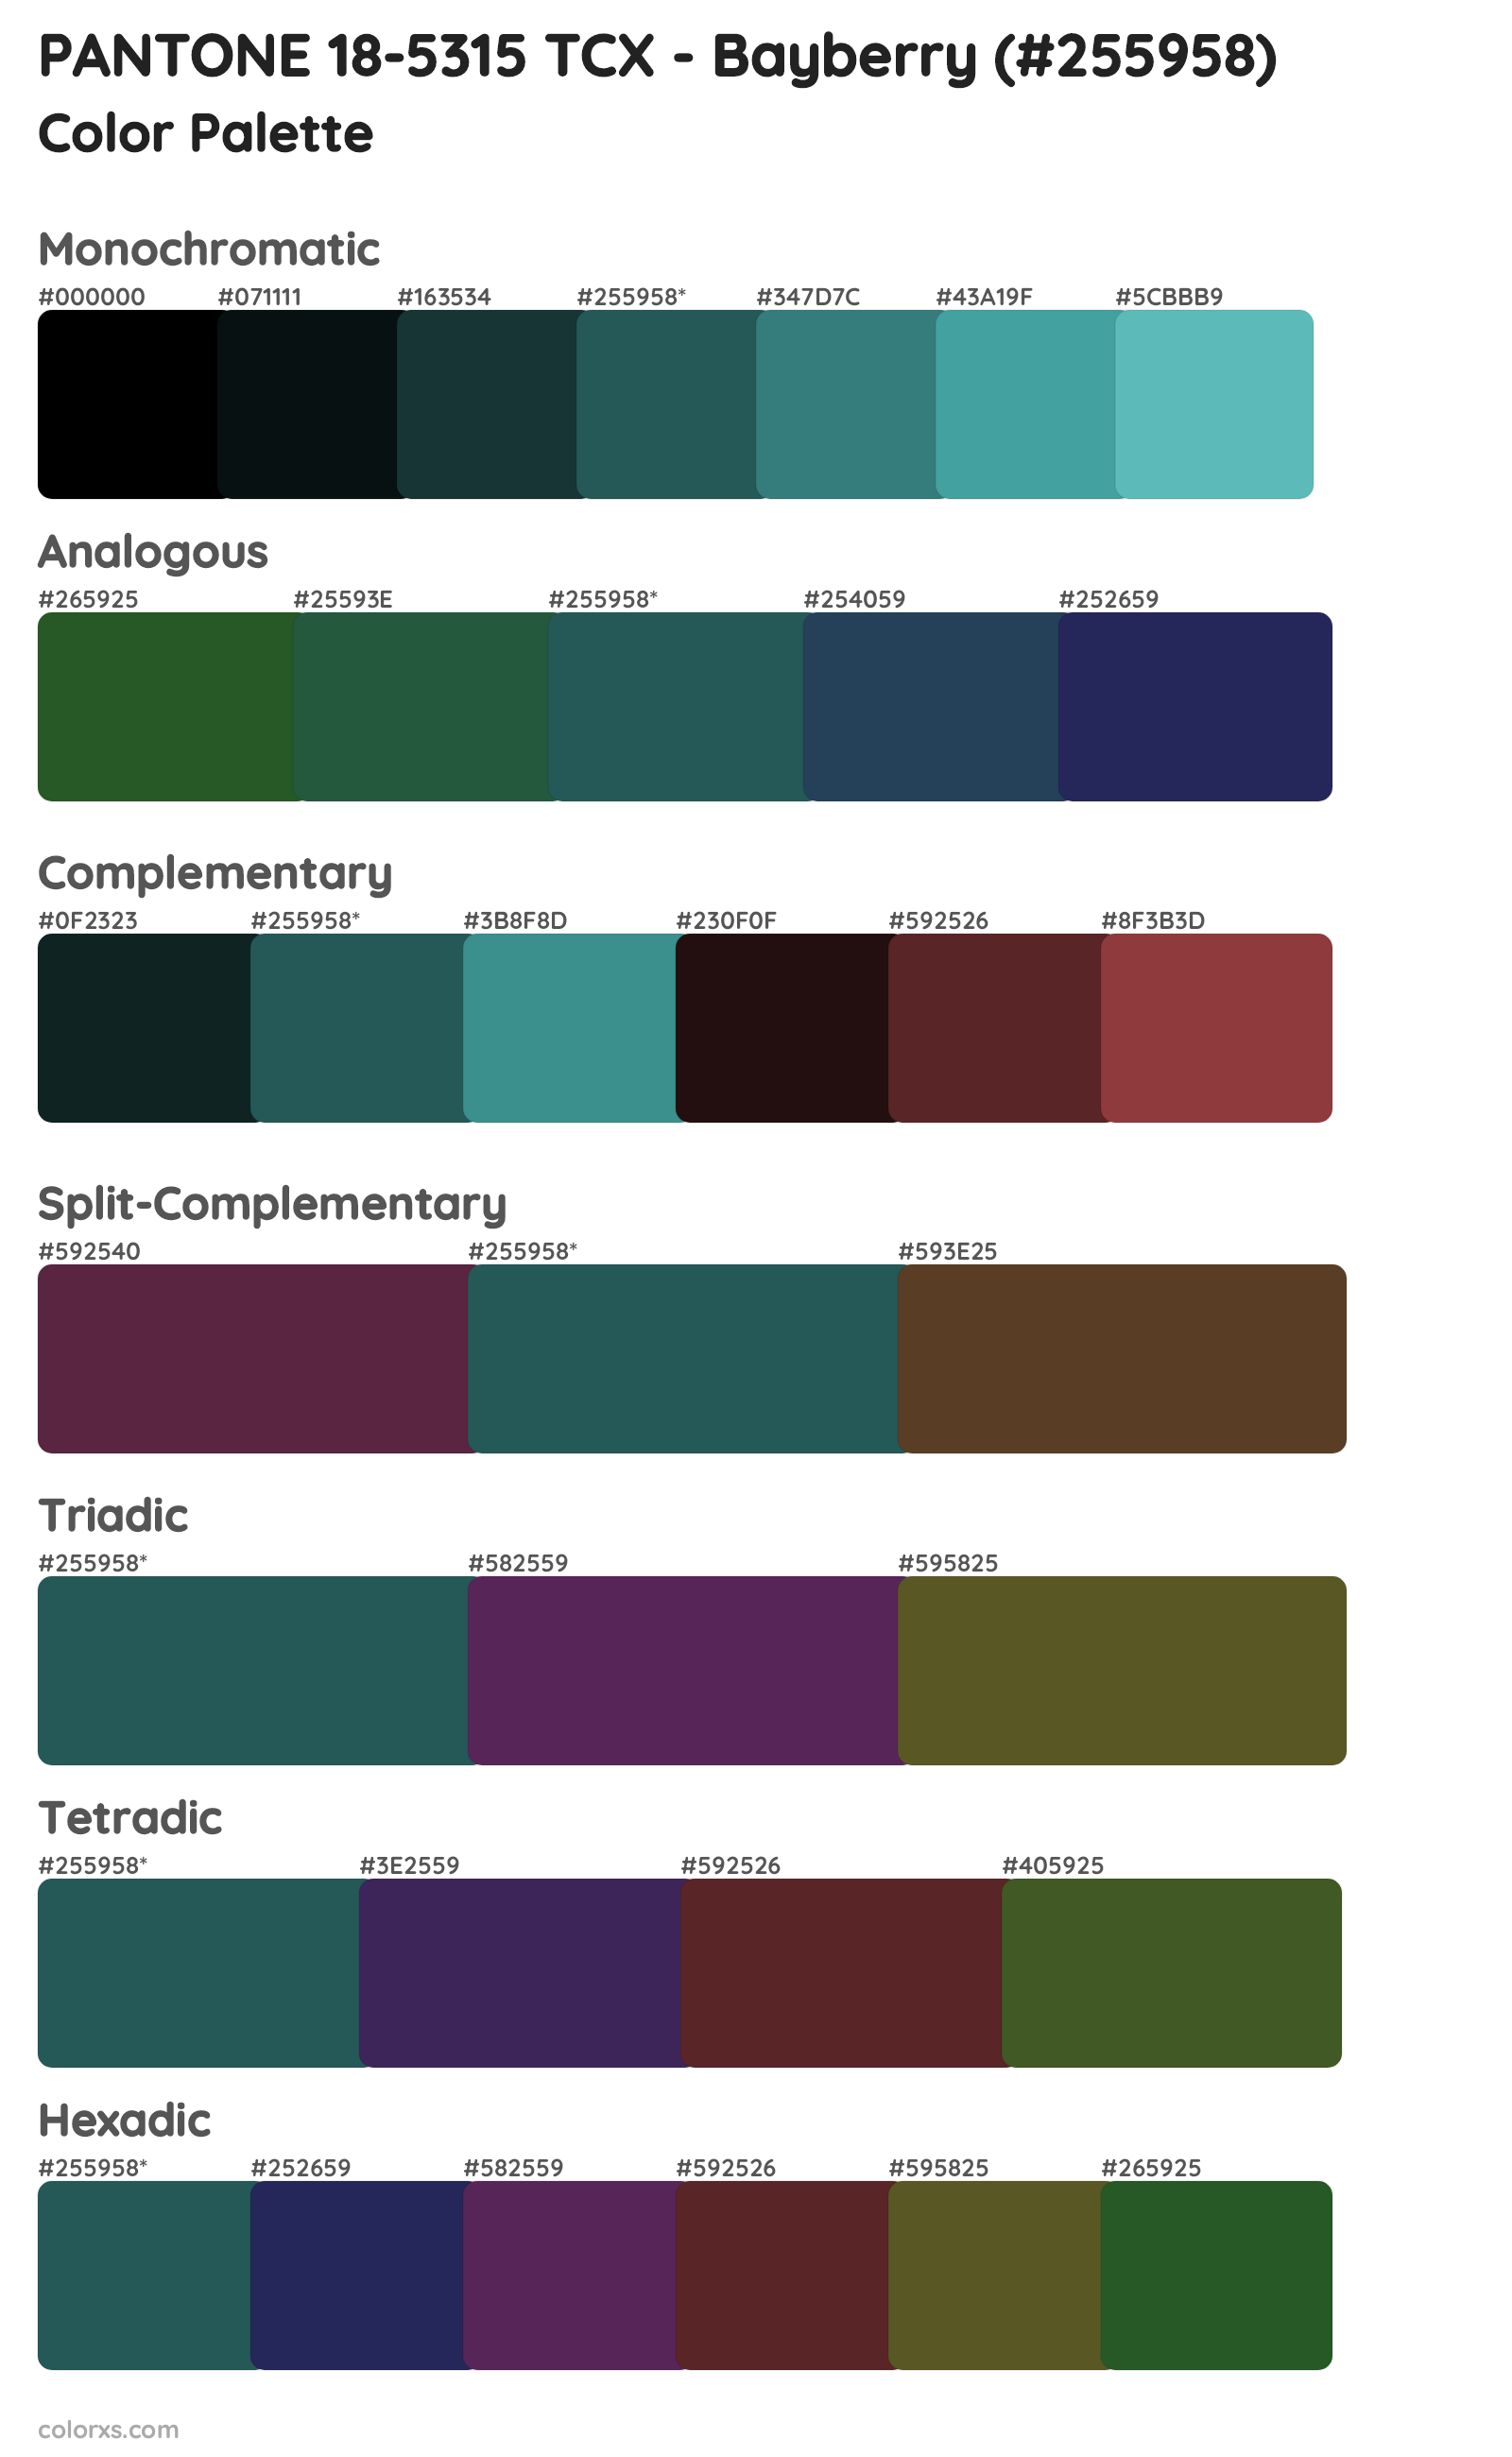 PANTONE 18-5315 TCX - Bayberry Color Scheme Palettes